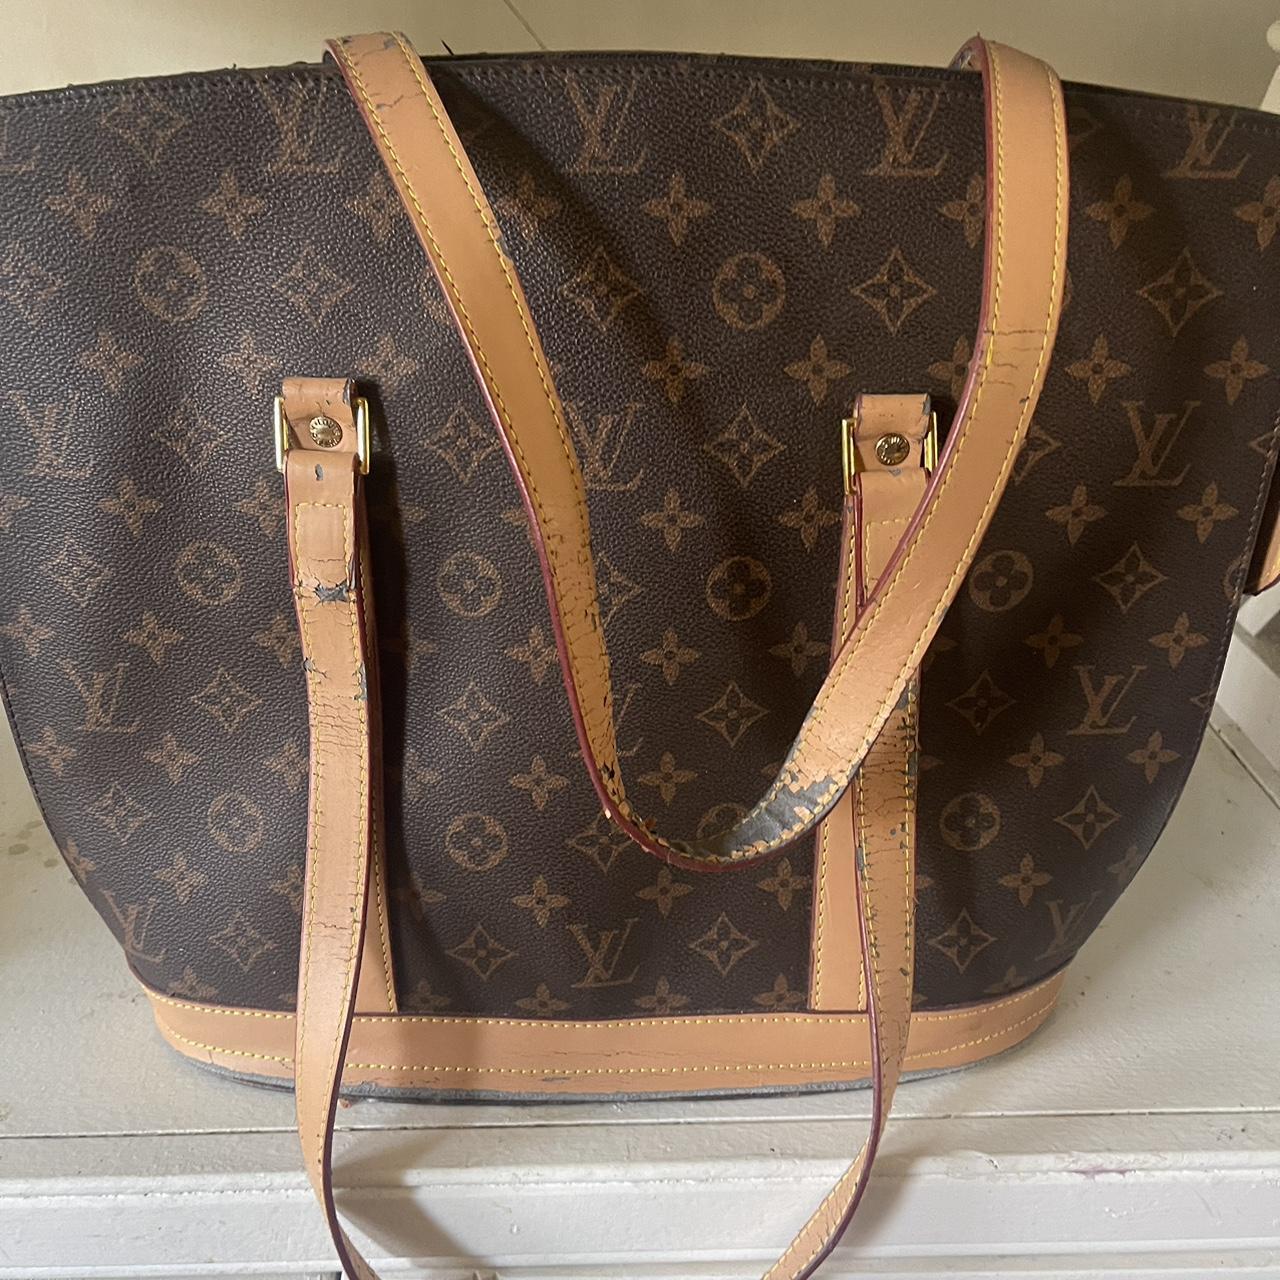 Buy Damaged Louis Vuitton Bags